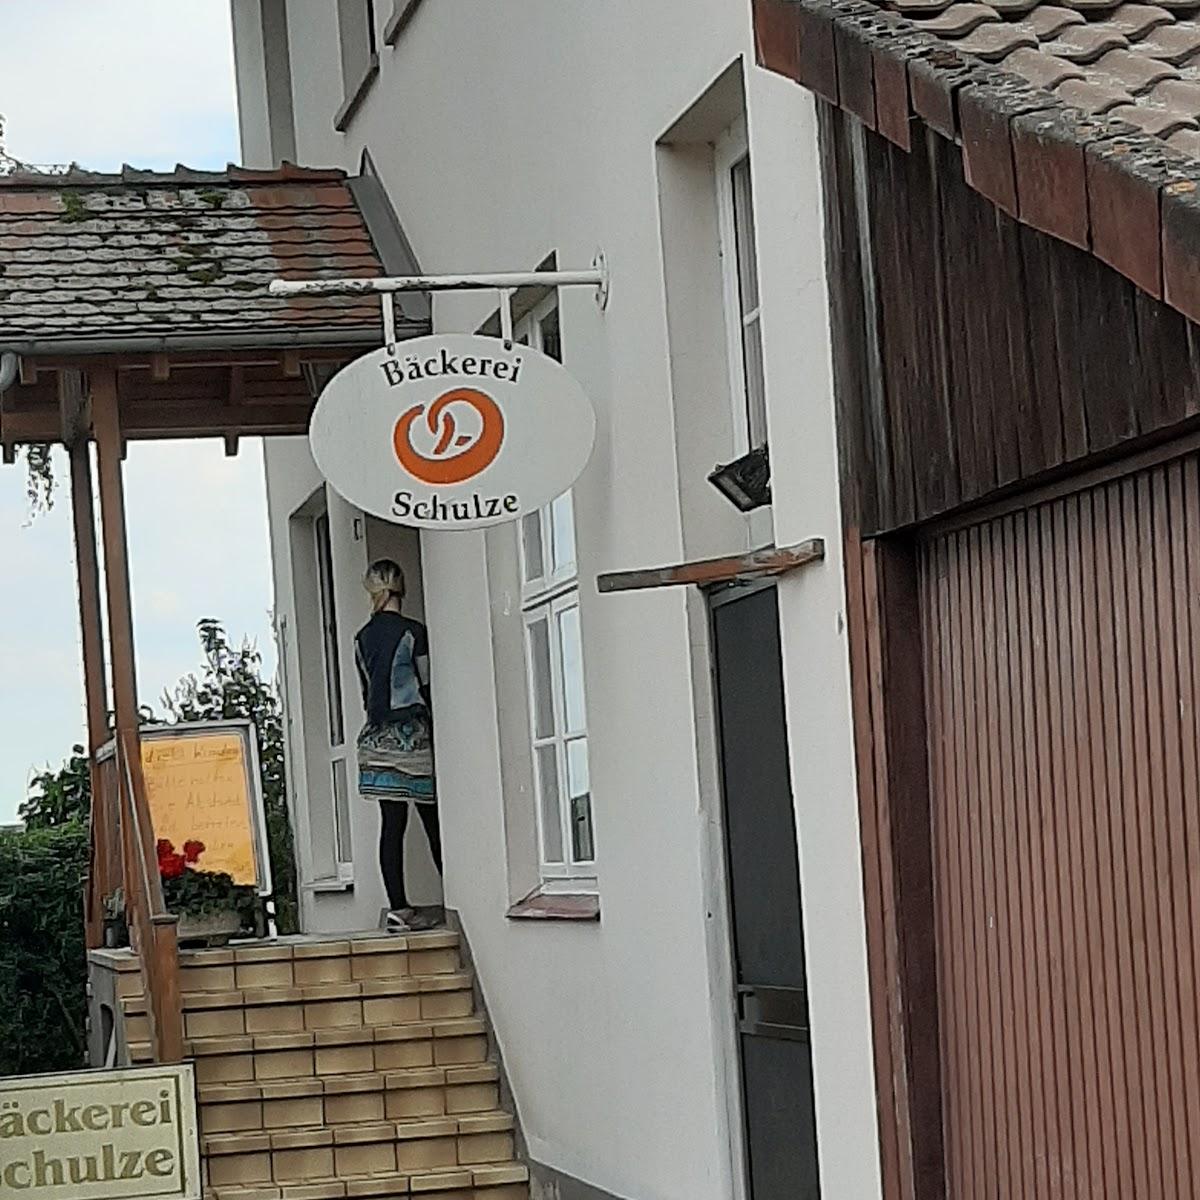 Restaurant "Bäckerei Schulze" in  Katlenburg-Lindau